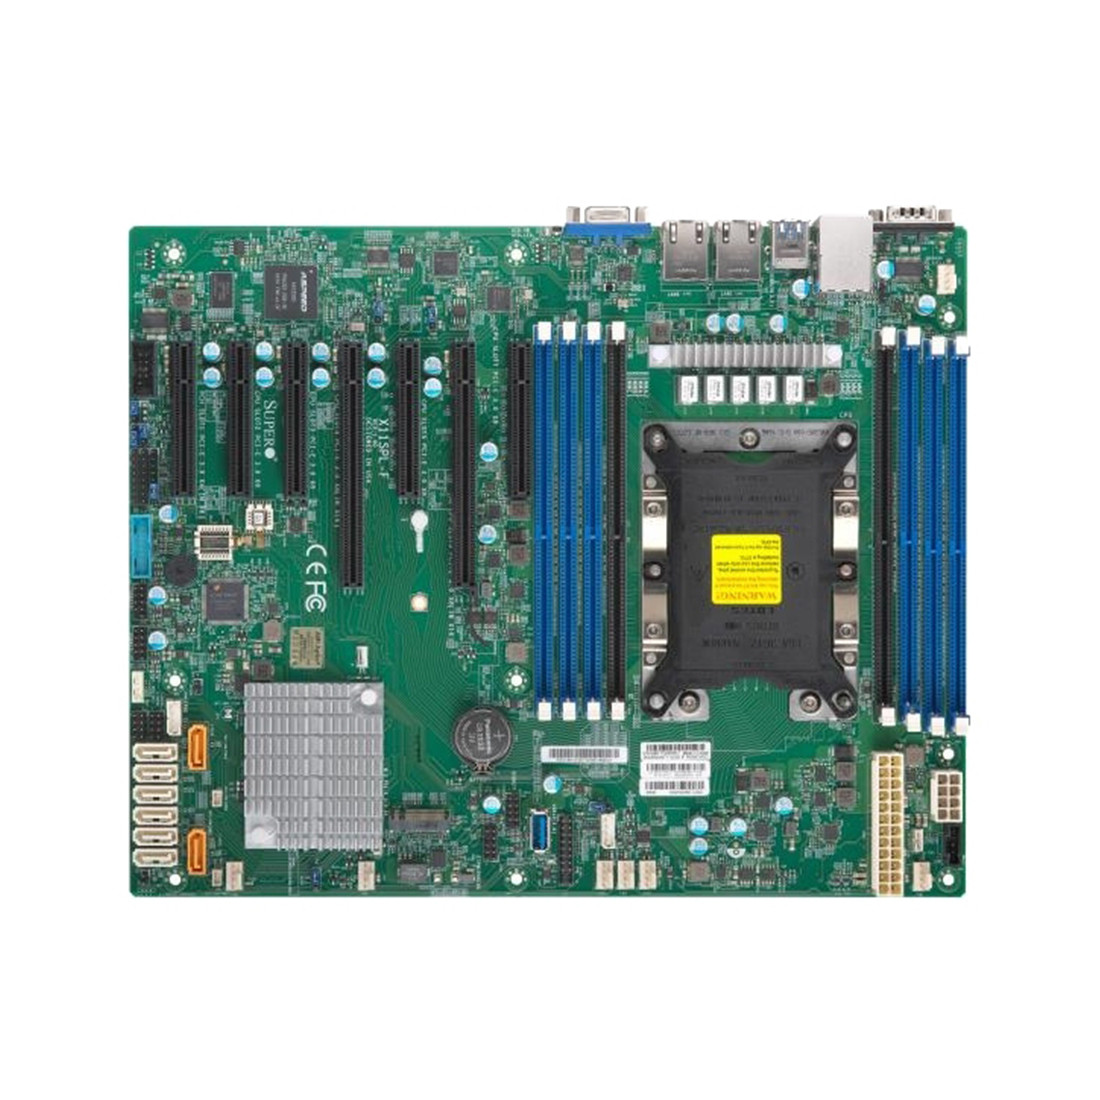 Материнская плата Supermicro X11SPL-F-O, поддерживает процессоры Intel Xeon, ECC память, 10 гигабит Ethernet.